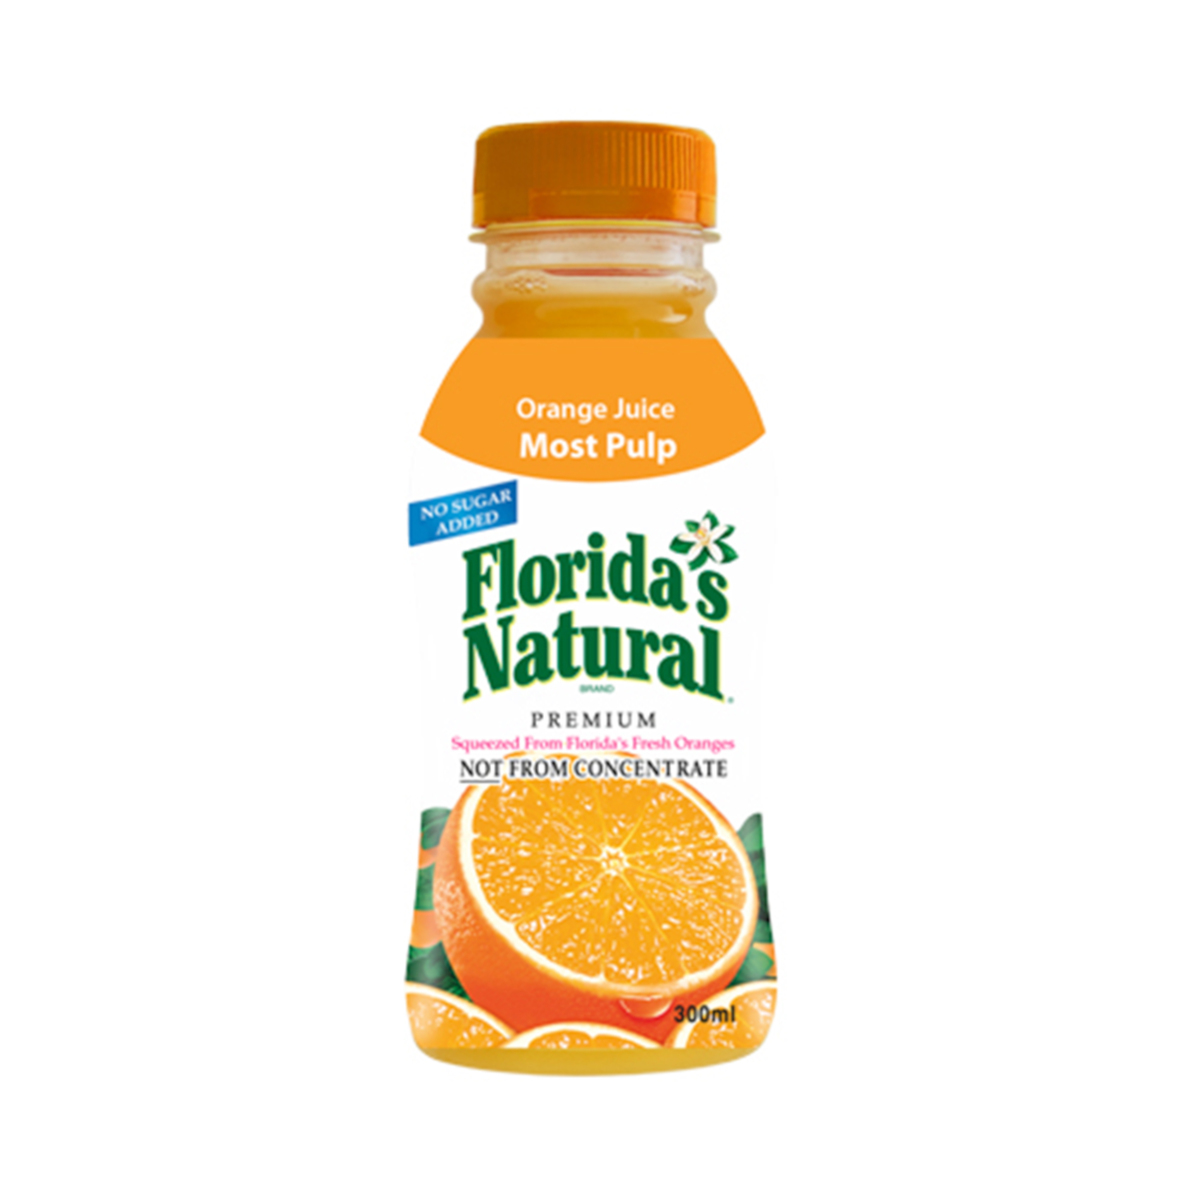 فلوريدا ناتشورال عصير برتقال مع اللب 300 مل